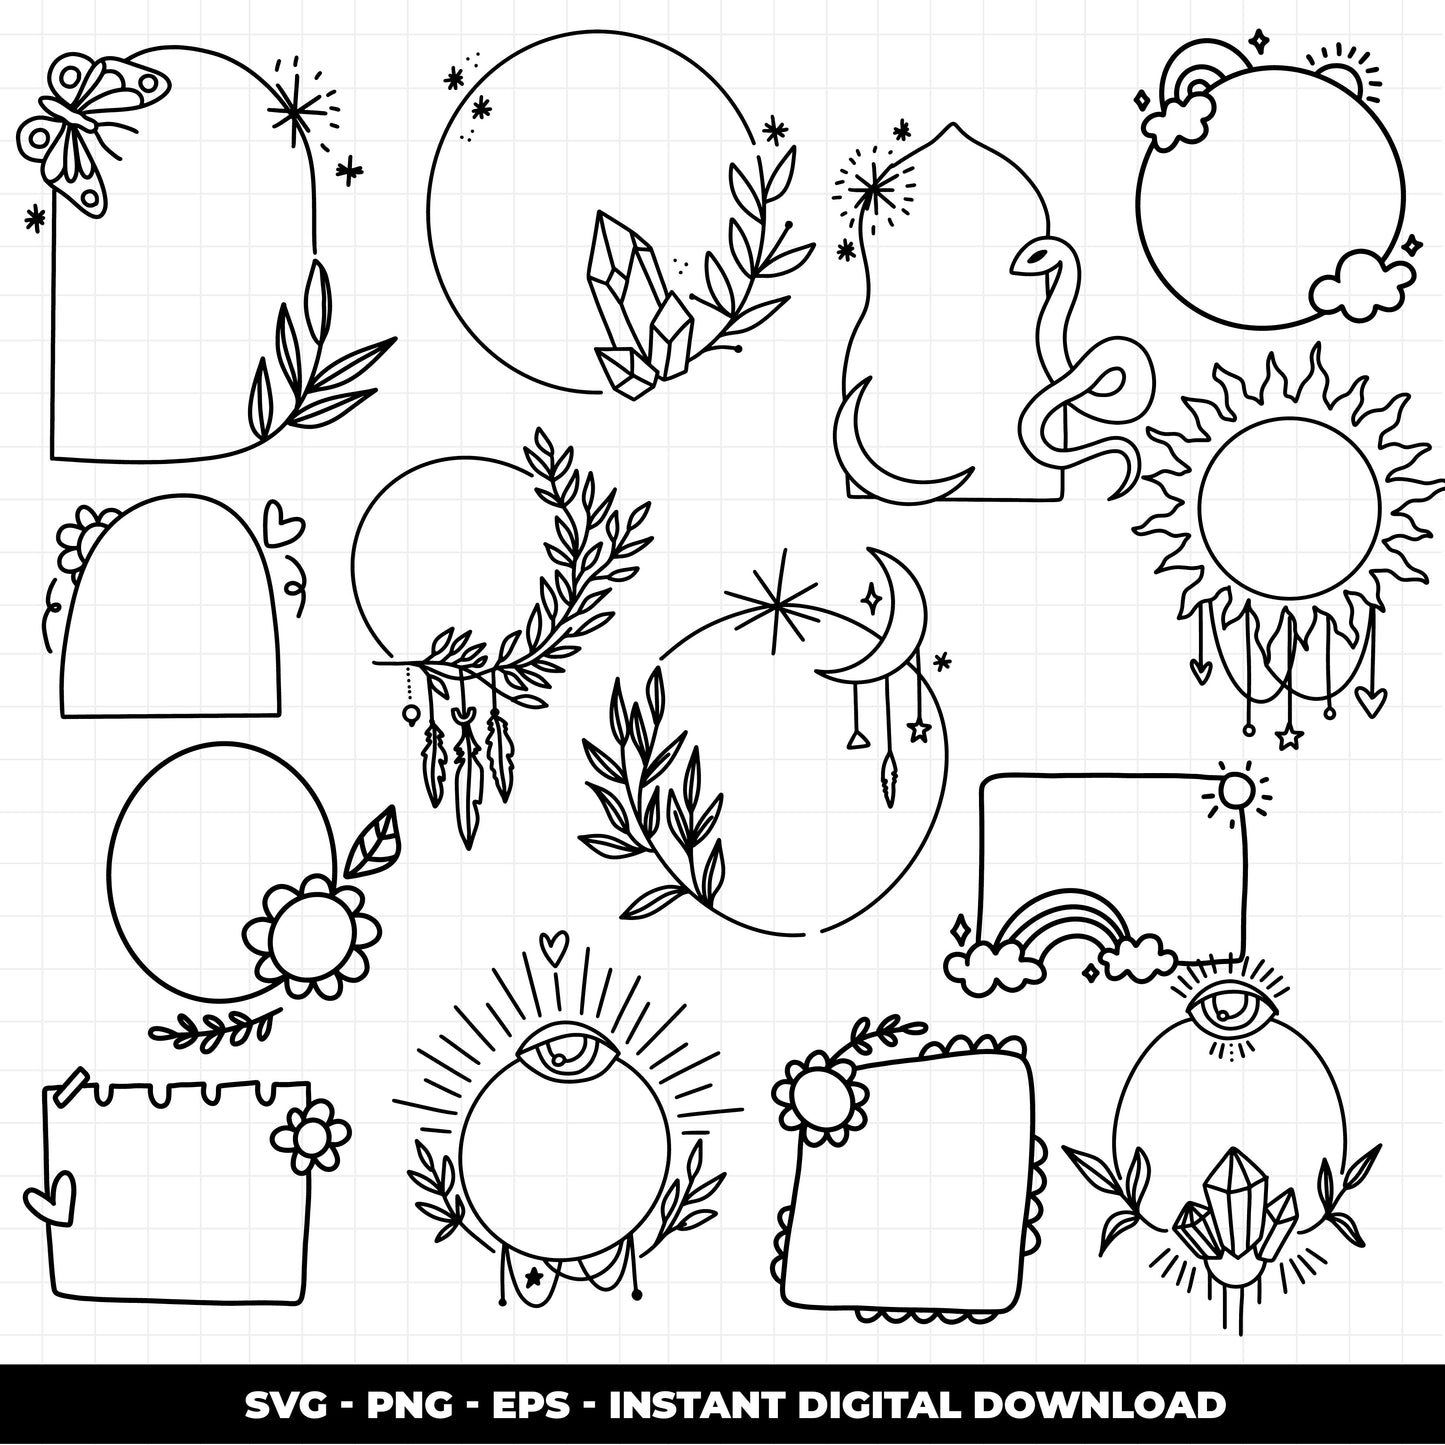 COD1377 -Doodle clipart, Frames Clipart, Aesthetic frames Clipart, frames printable, doodle frame clipart, doodle svg